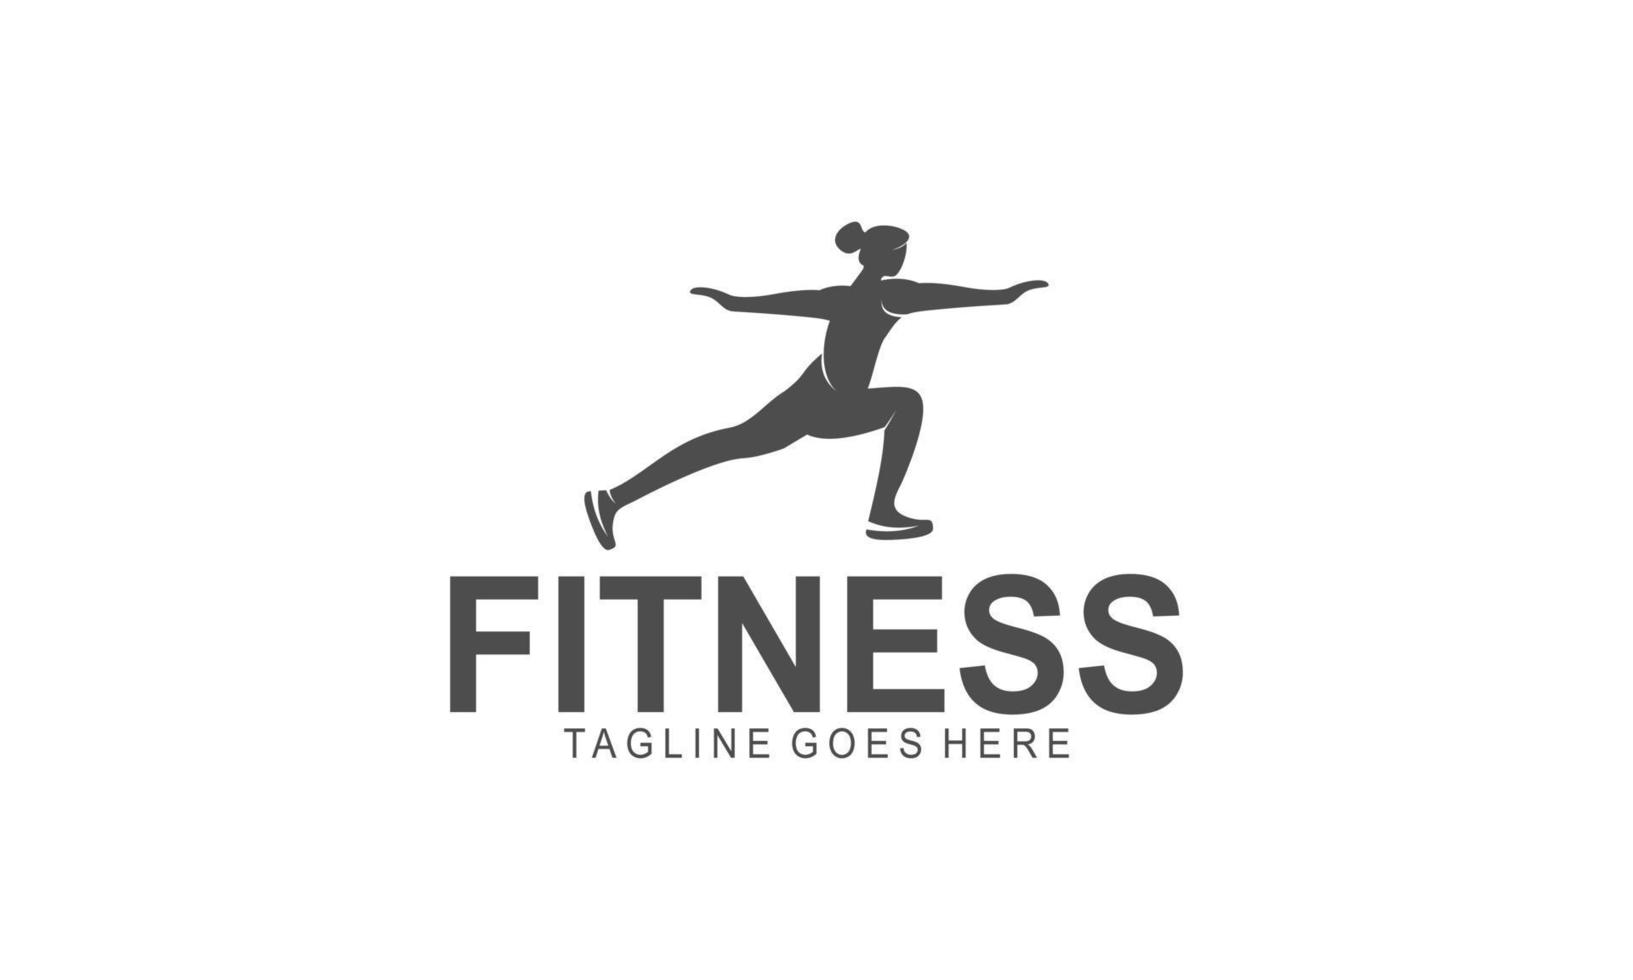 träna logotyp. kondition, aerob och träna övning i Gym. vektor